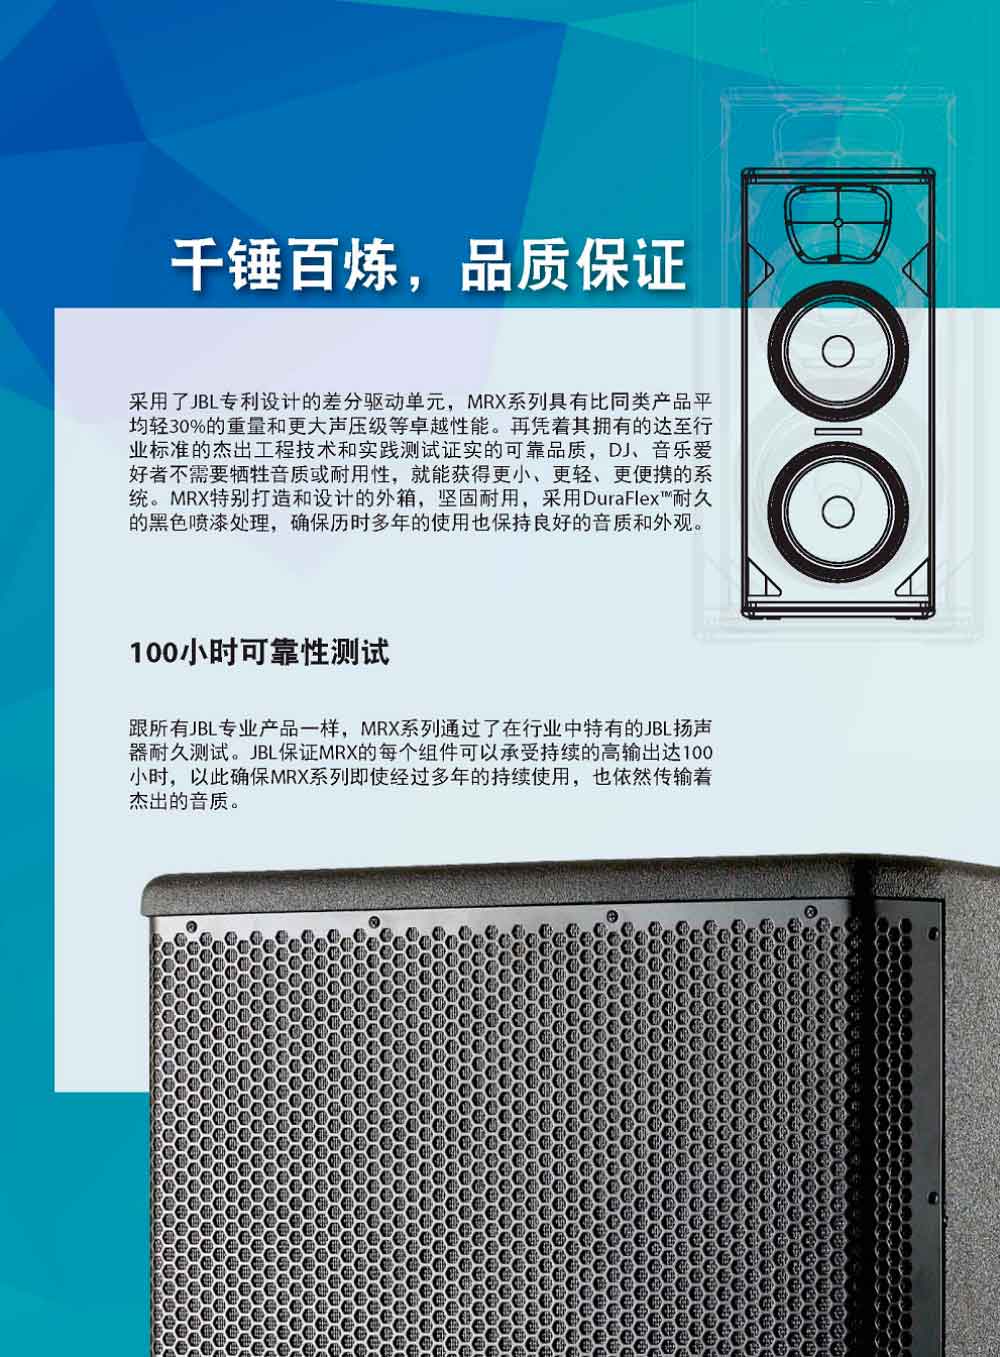 JBL MRX612M 音箱 专业音响  jbl音响中国官网 MRX600 美国jbl音响官网 JBL音响批发